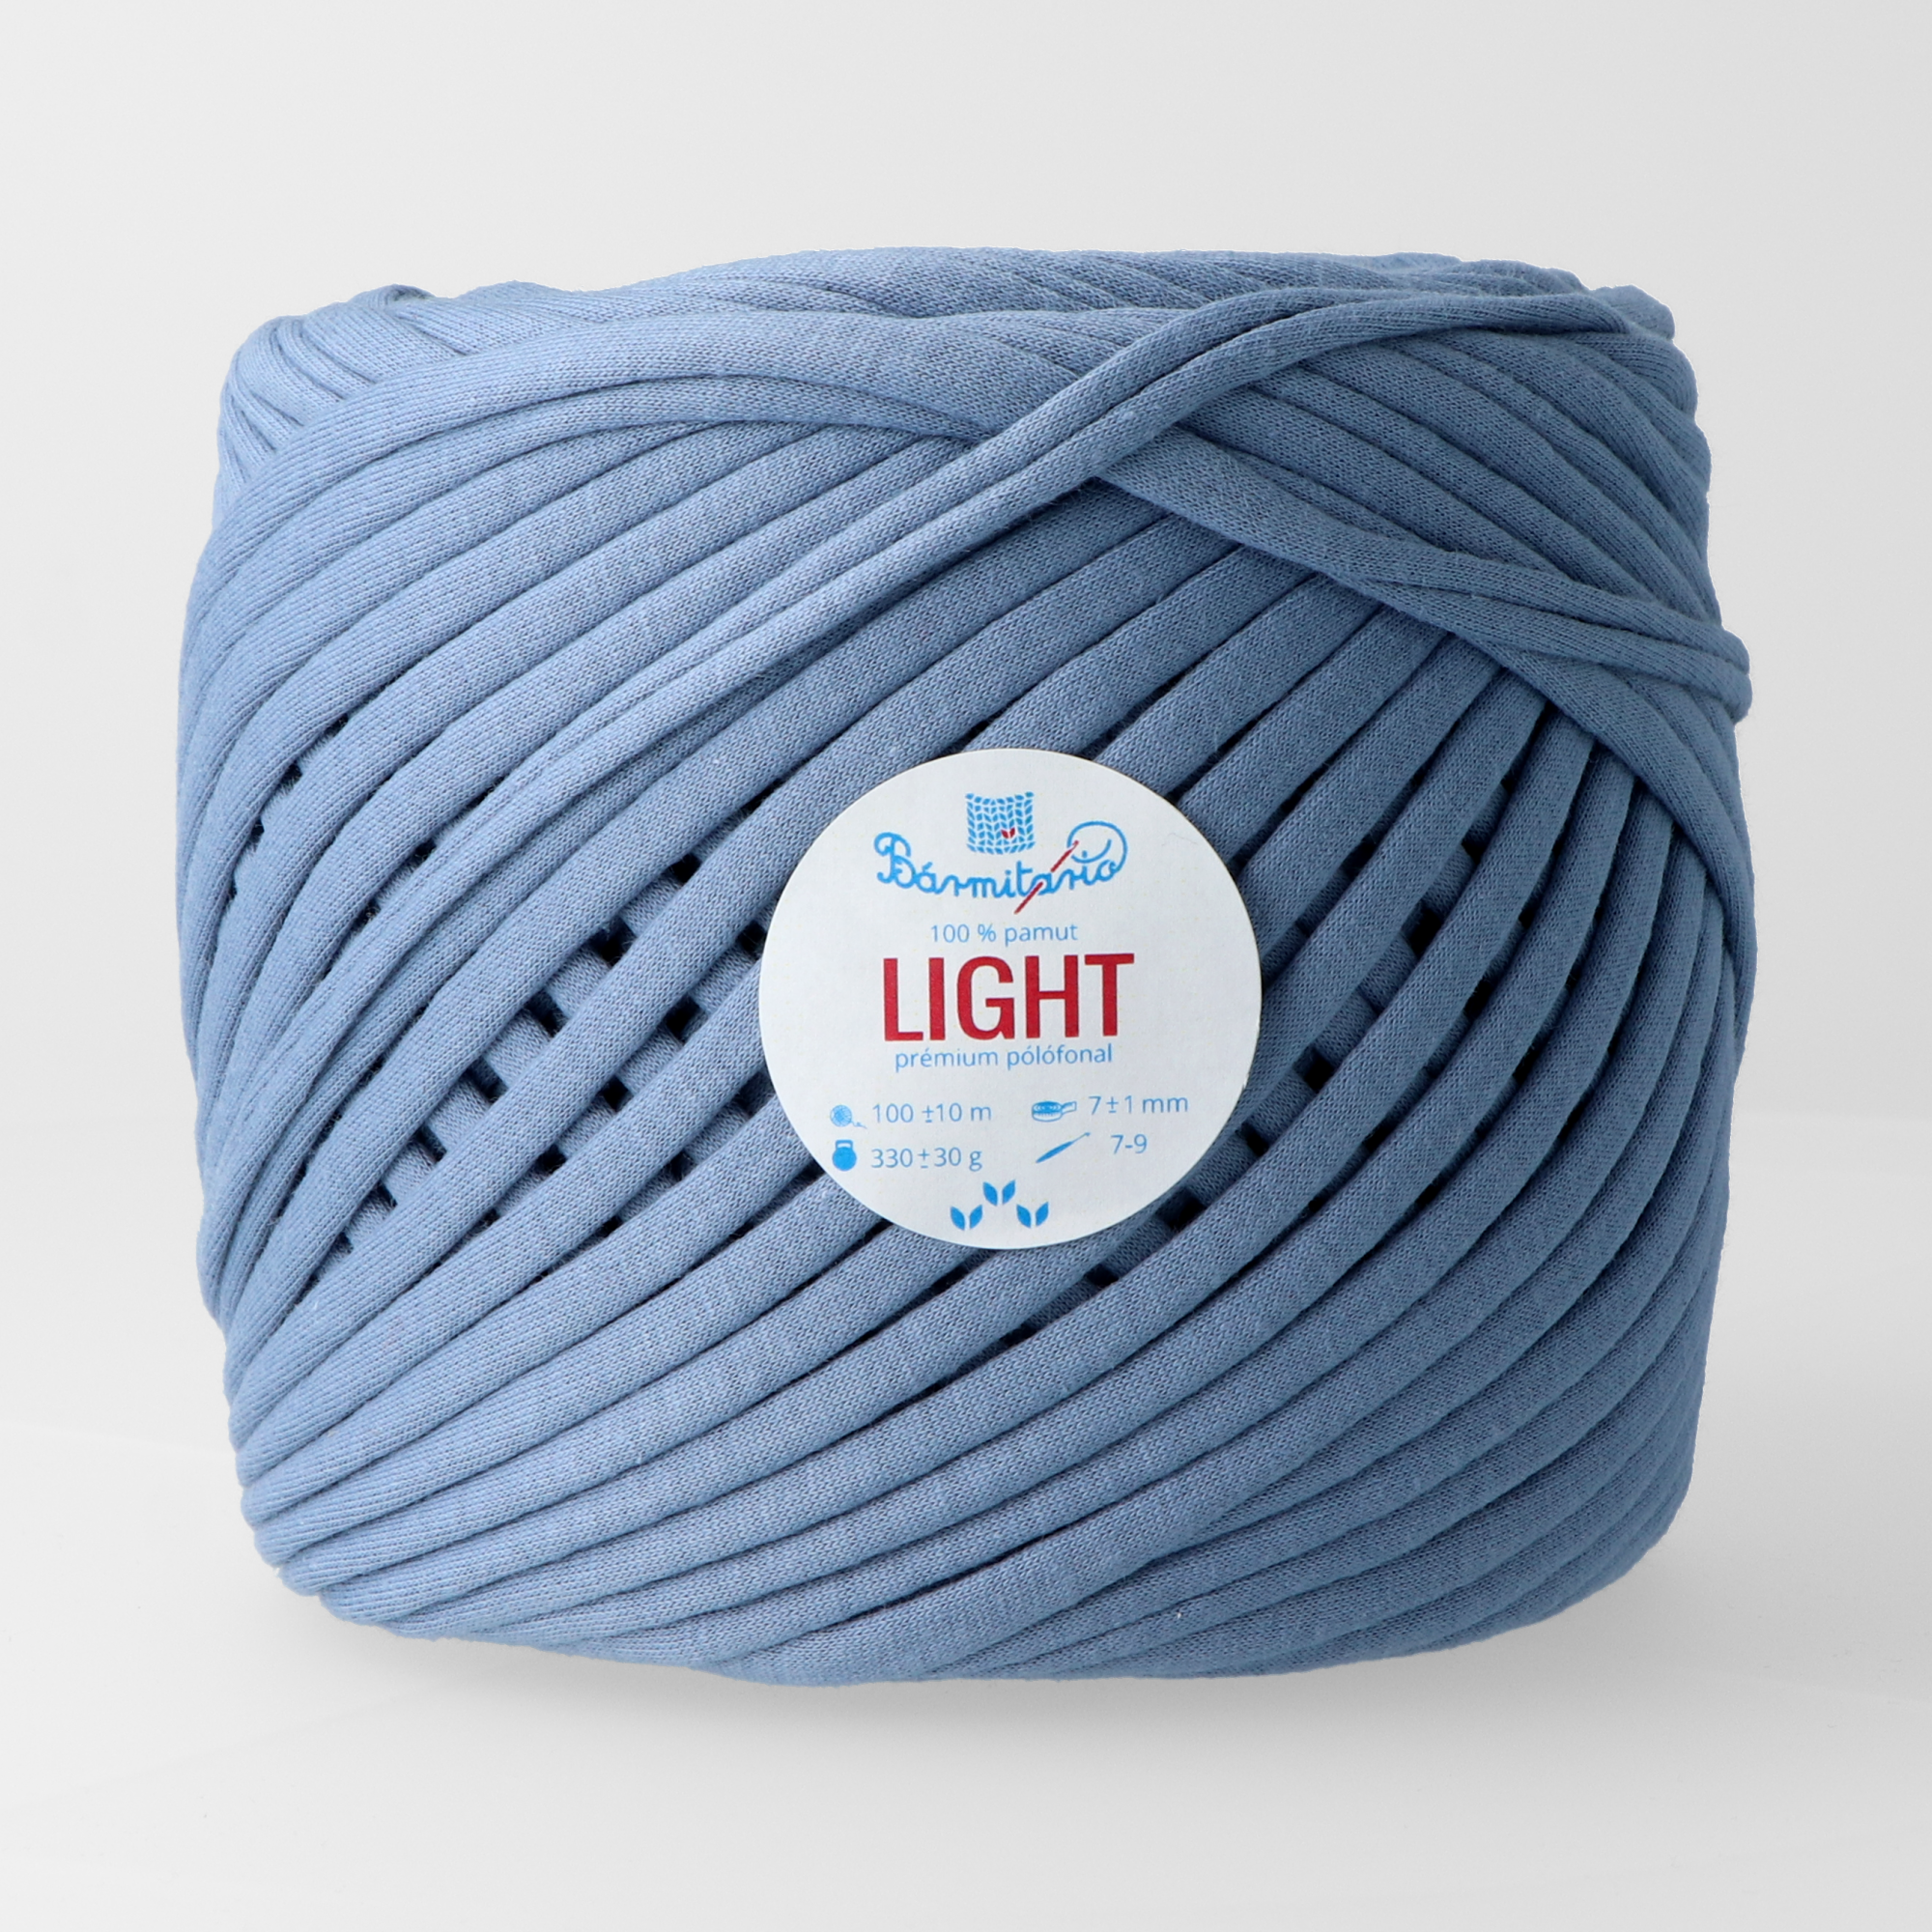 Bármitartó LIGHT prémium pólófonal - Téli kék